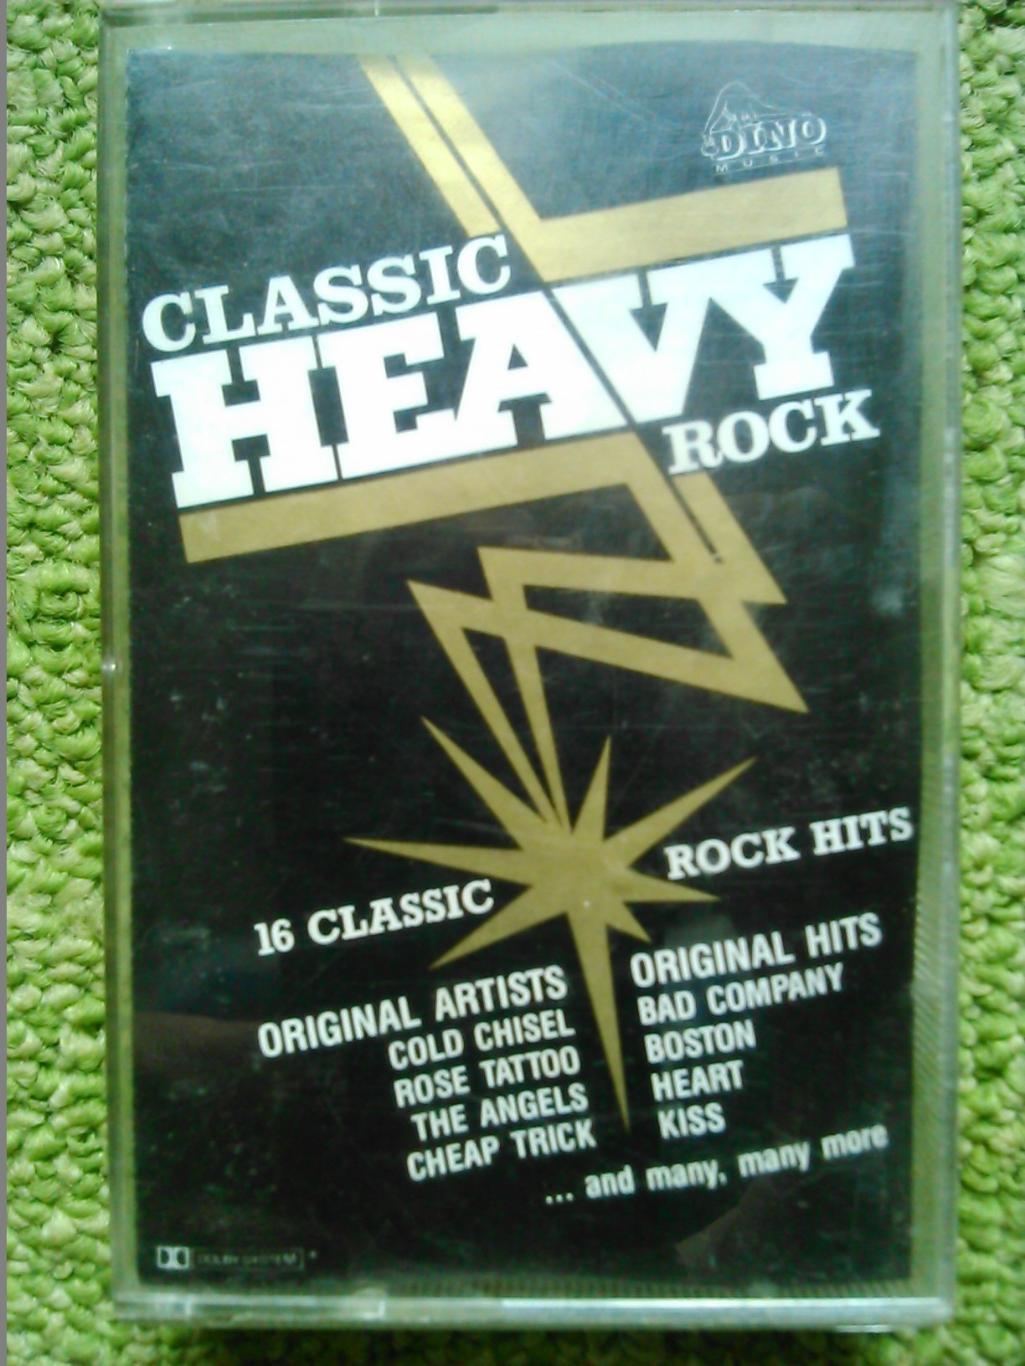 MC/аудиокассета Classik HEAVY ROCK/Оригинальные хиты/. Оптом скидки до 50%!